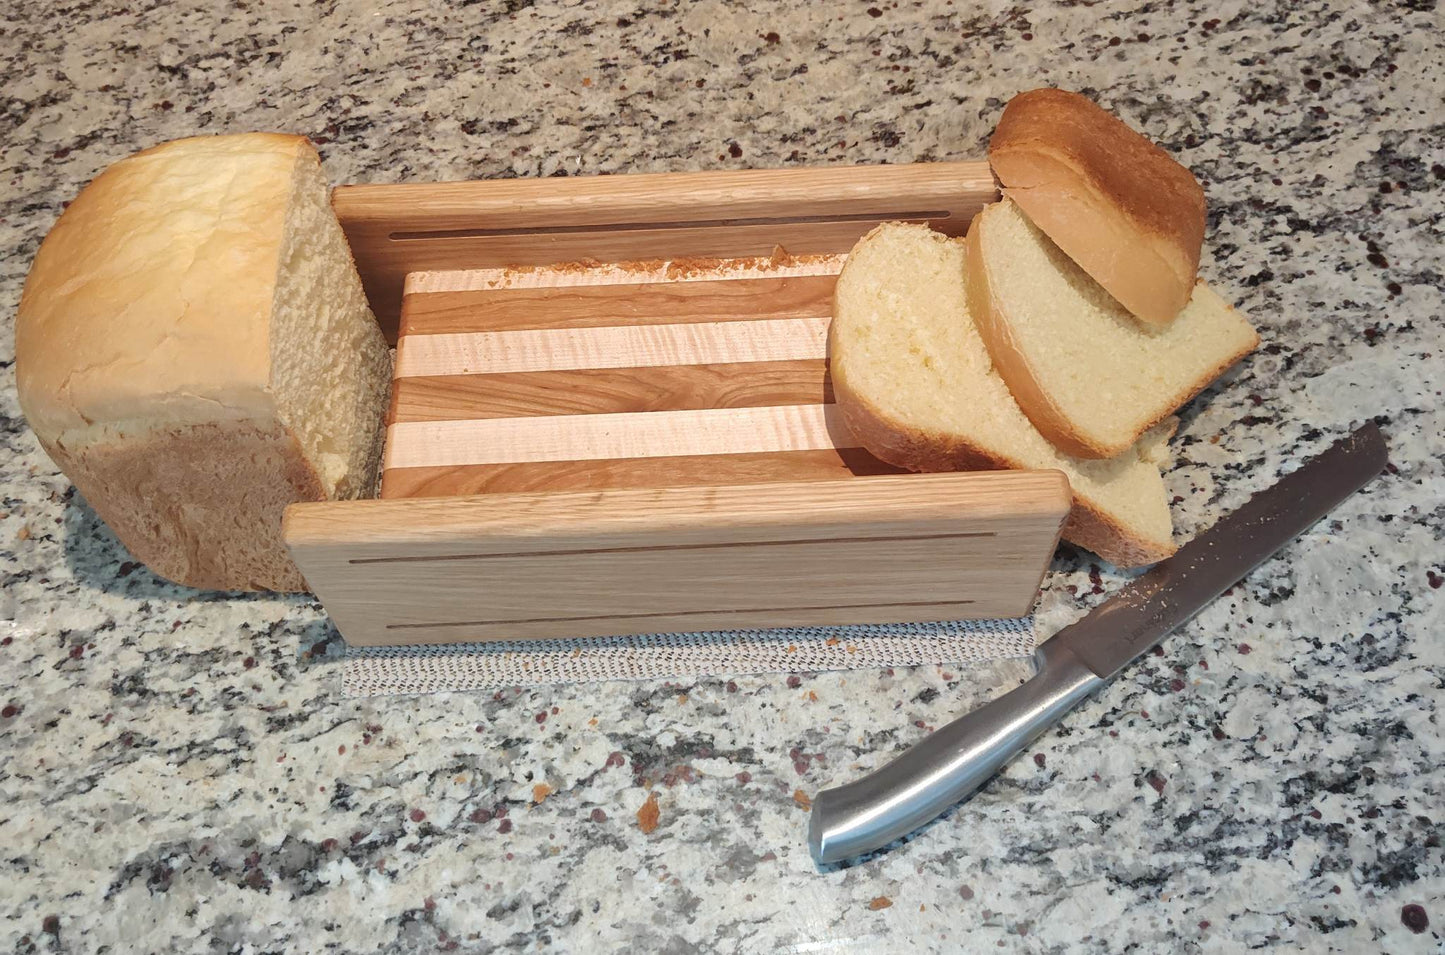 Bread slicing guide